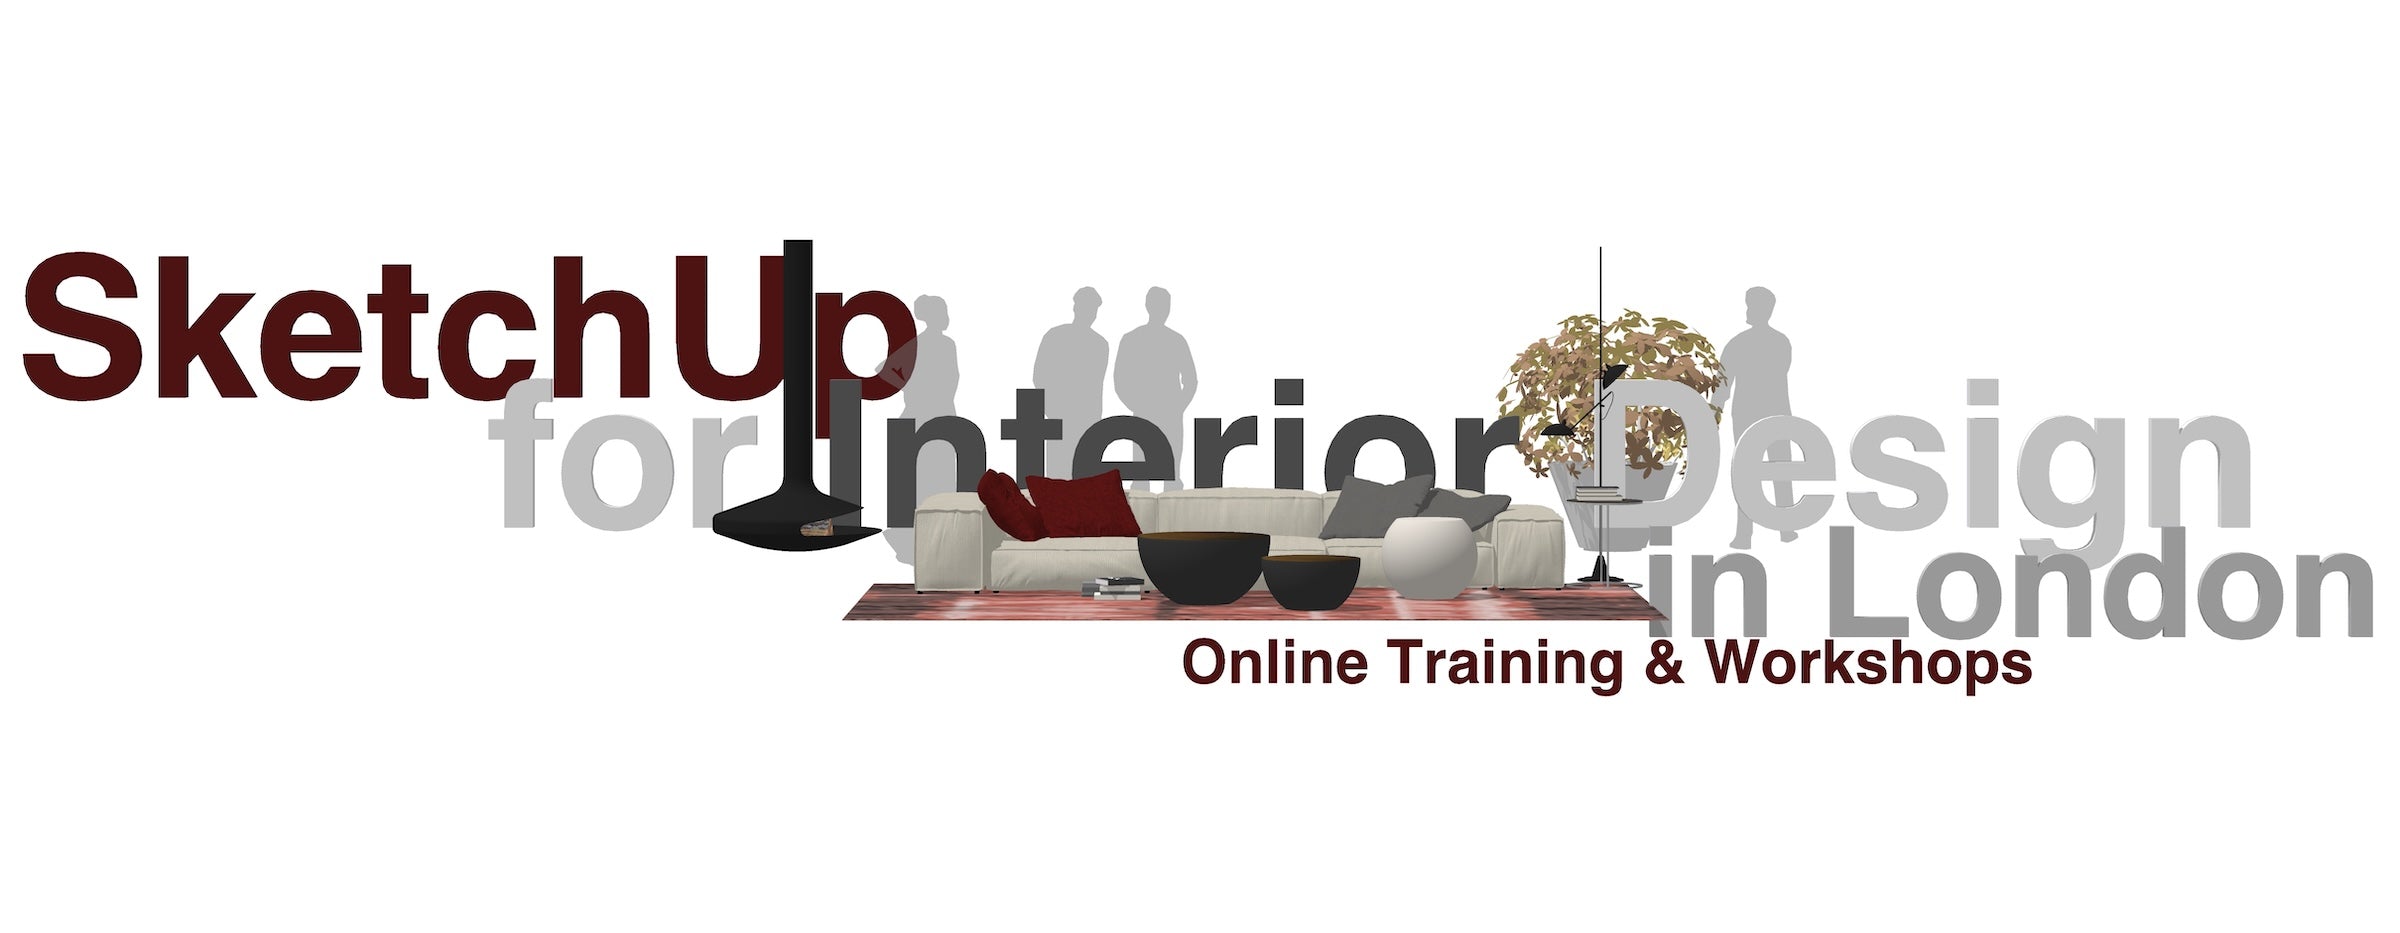 SketchUp for Interior Designer Online Training and Workshops